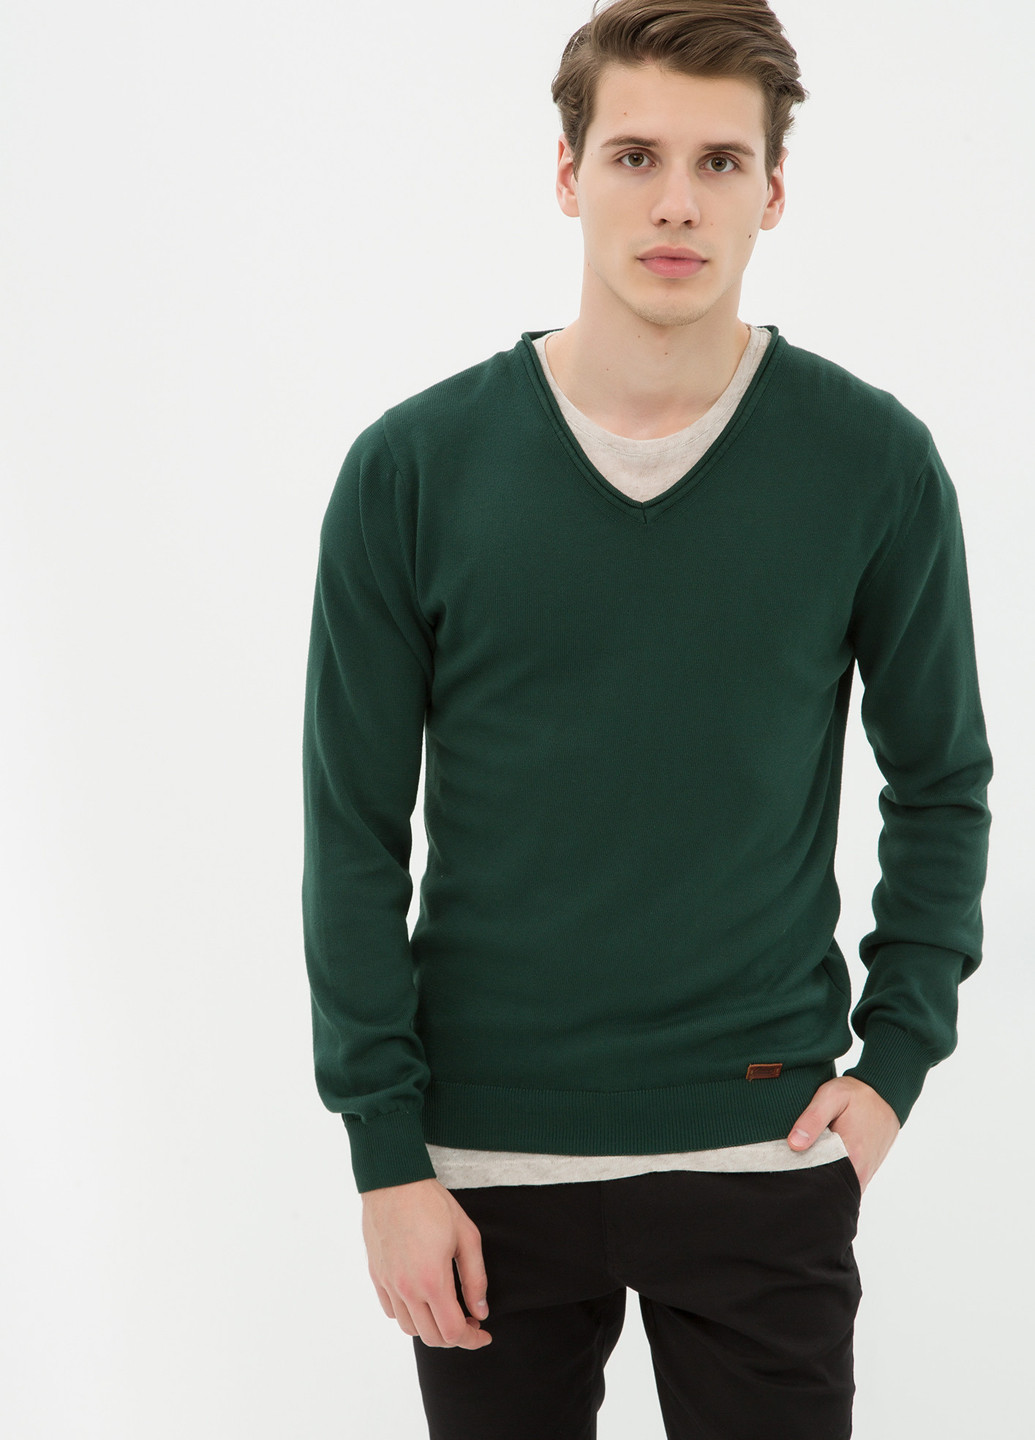 Зеленый демисезонный пуловер пуловер KOTON